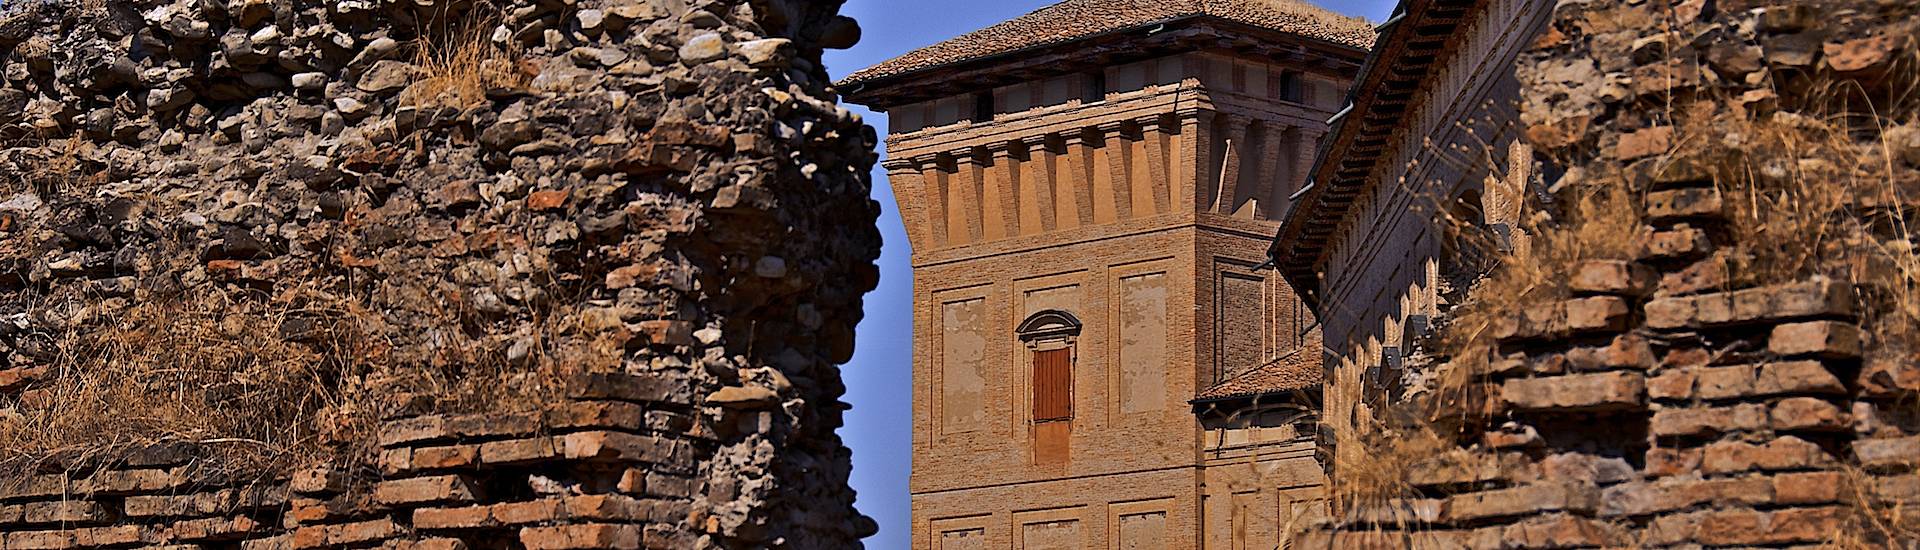 Rocca dei Boiardo - La Torre della Rocca photo credits: |Comune di Scandiano| - Comune di Scandiano